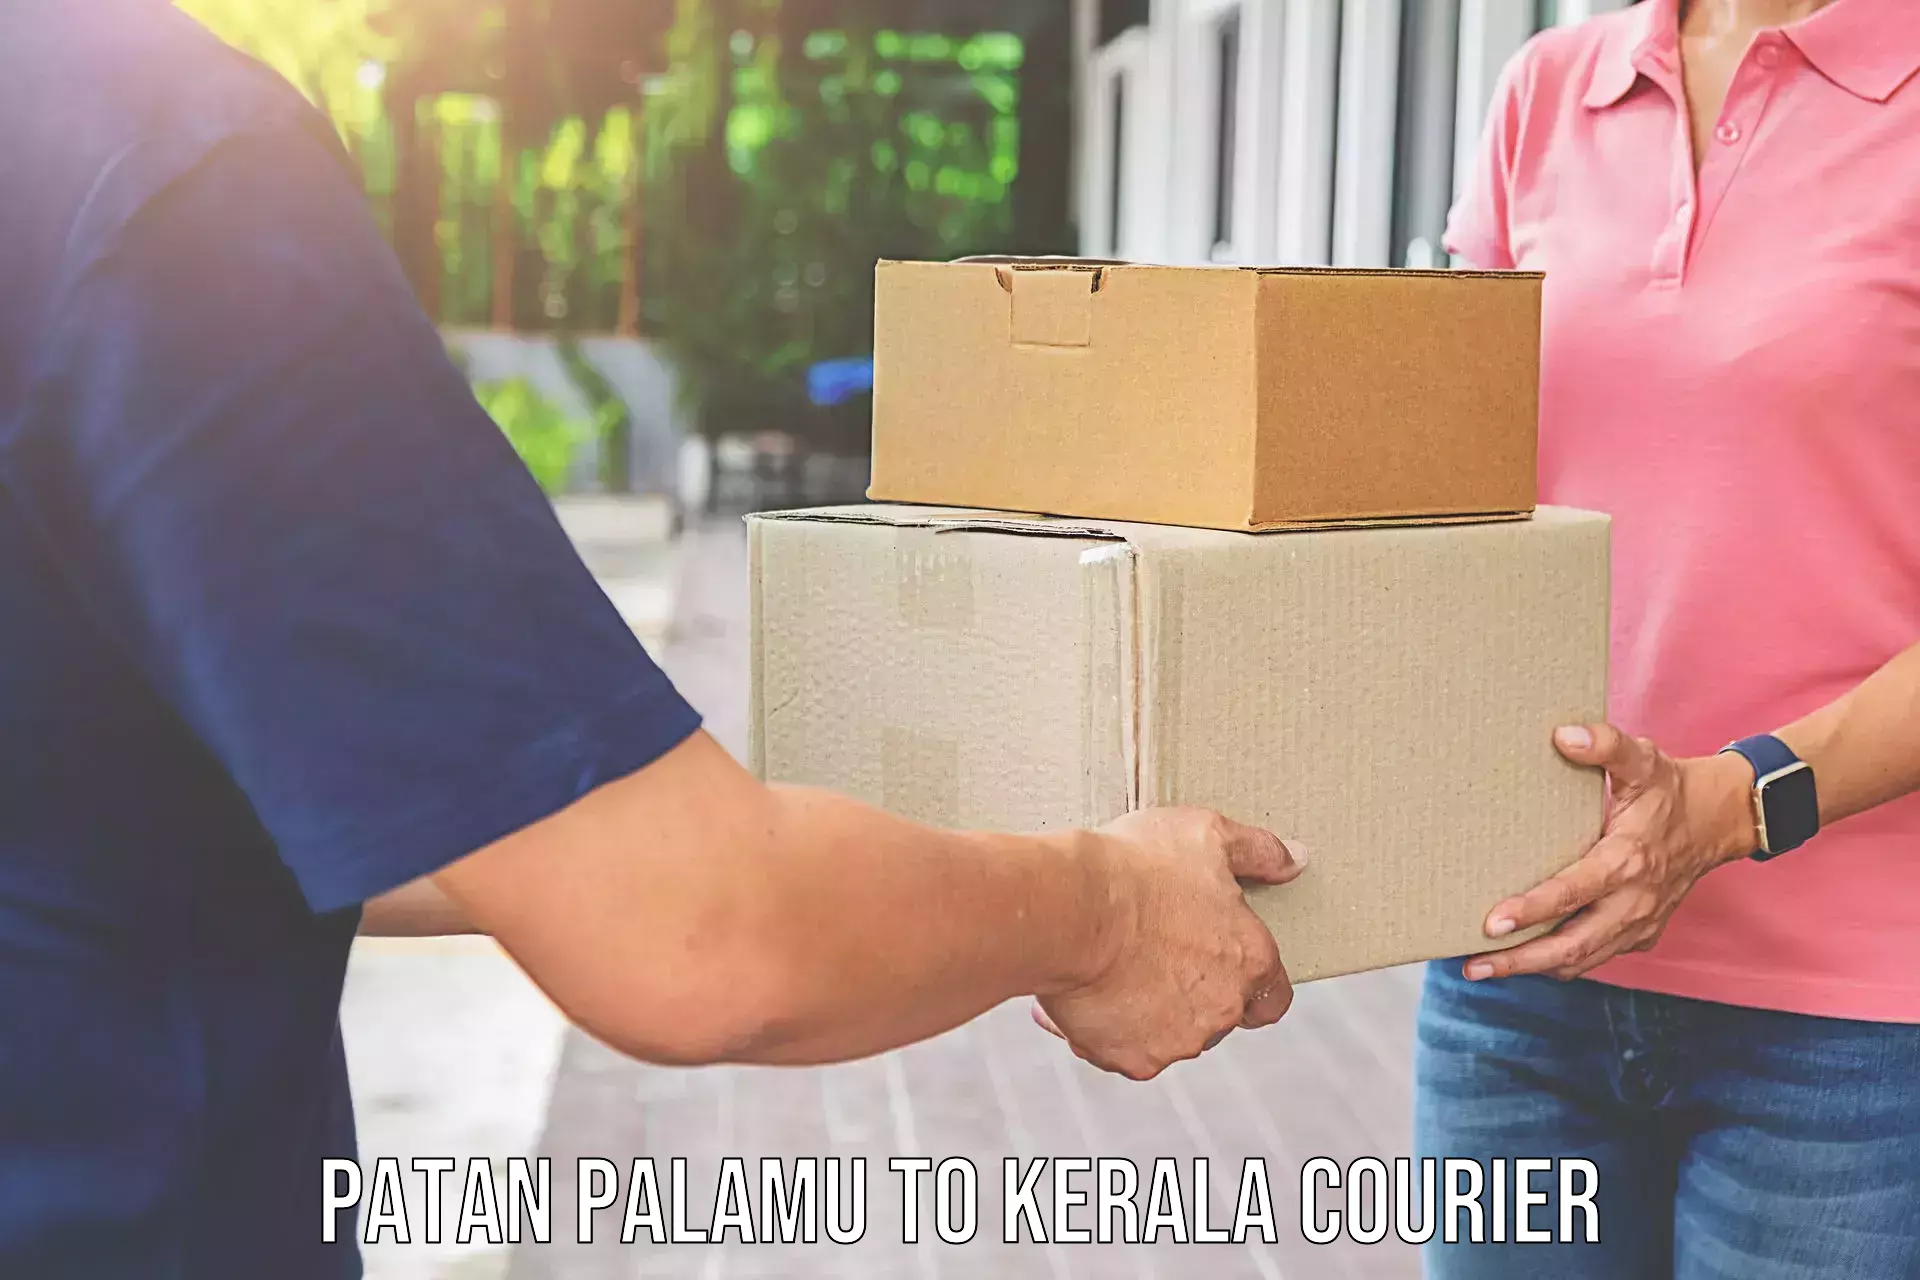 Furniture transport service Patan Palamu to Palai